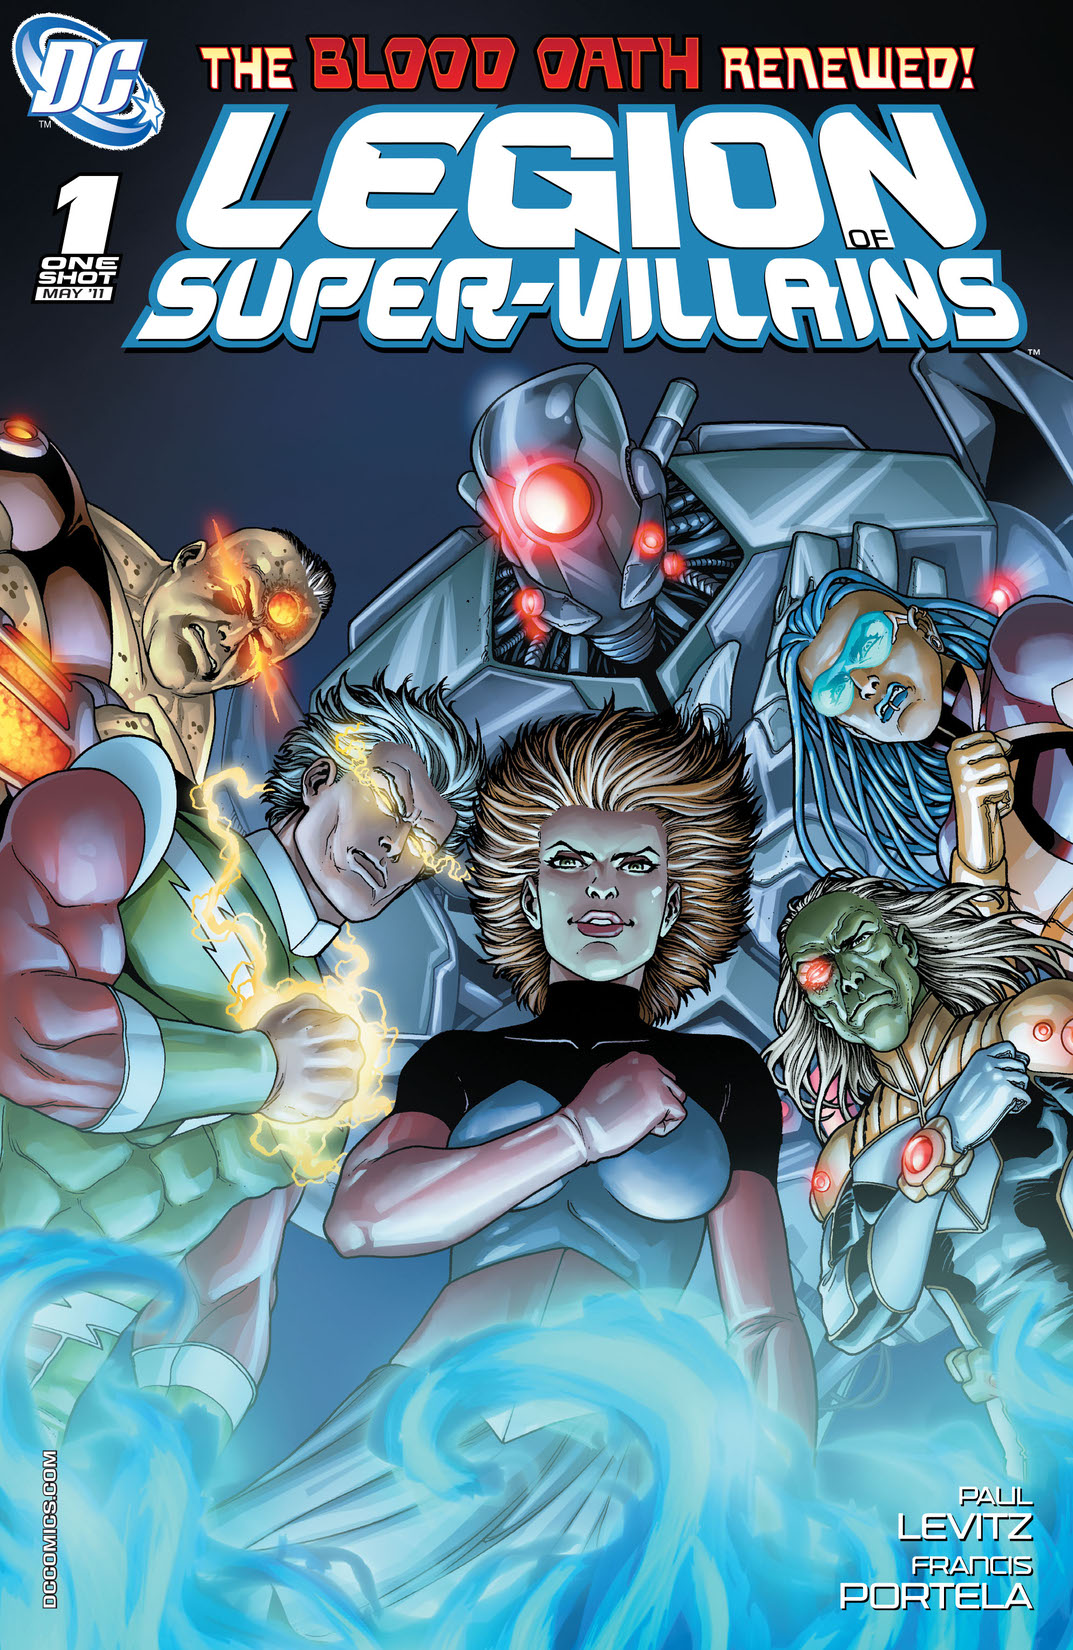 Legion of Super-Villains #1 preview images